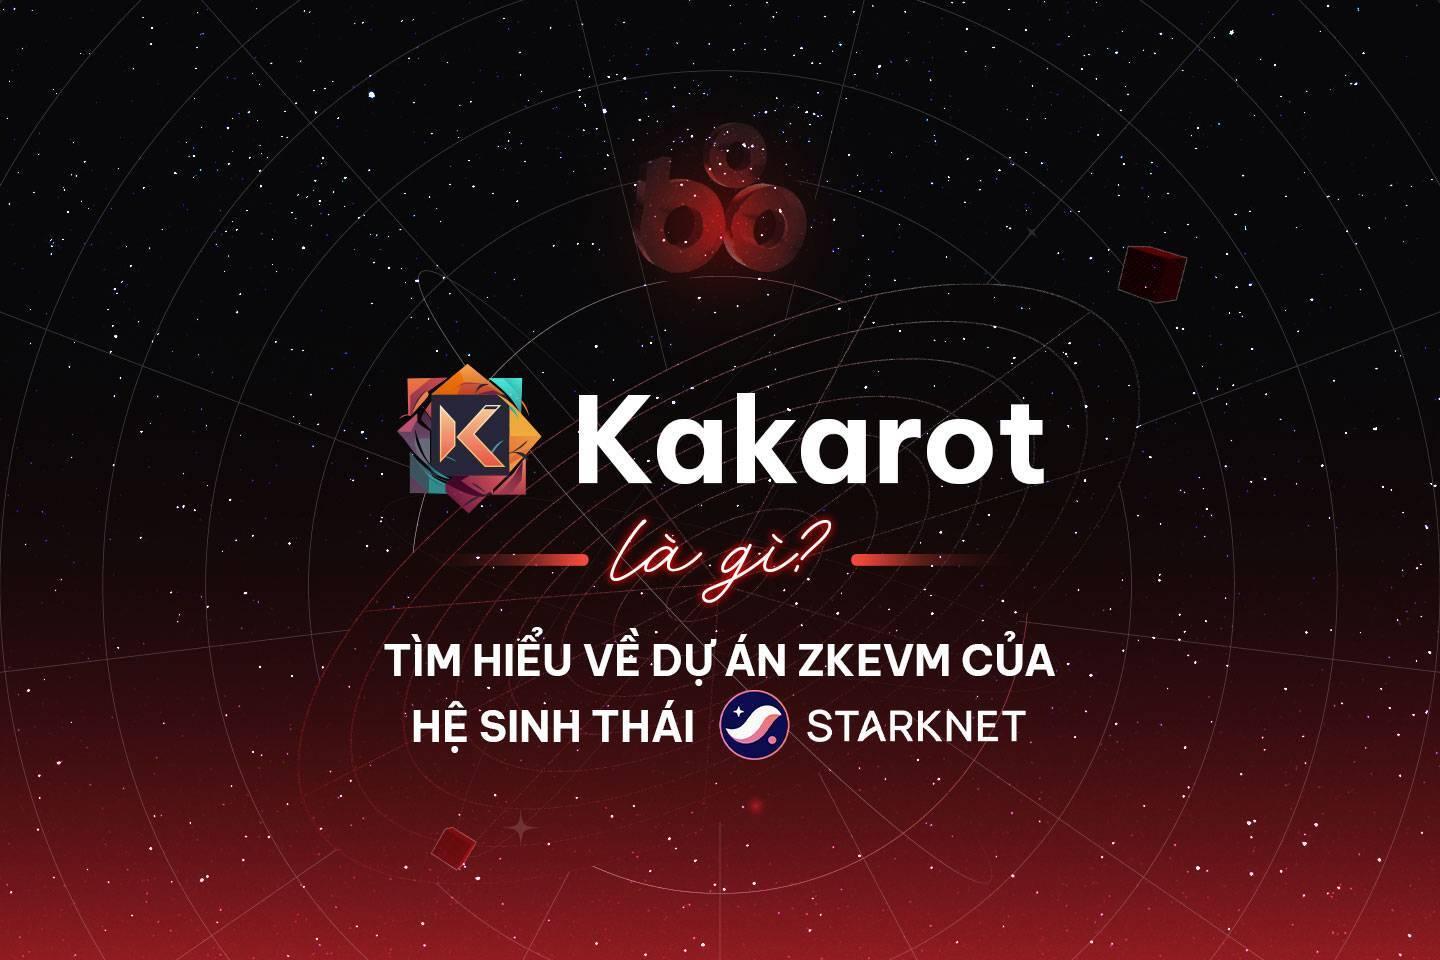 kakarot-la-gi-tim-hieu-ve-du-an-zkevm-cua-he-sinh-thai-starknet